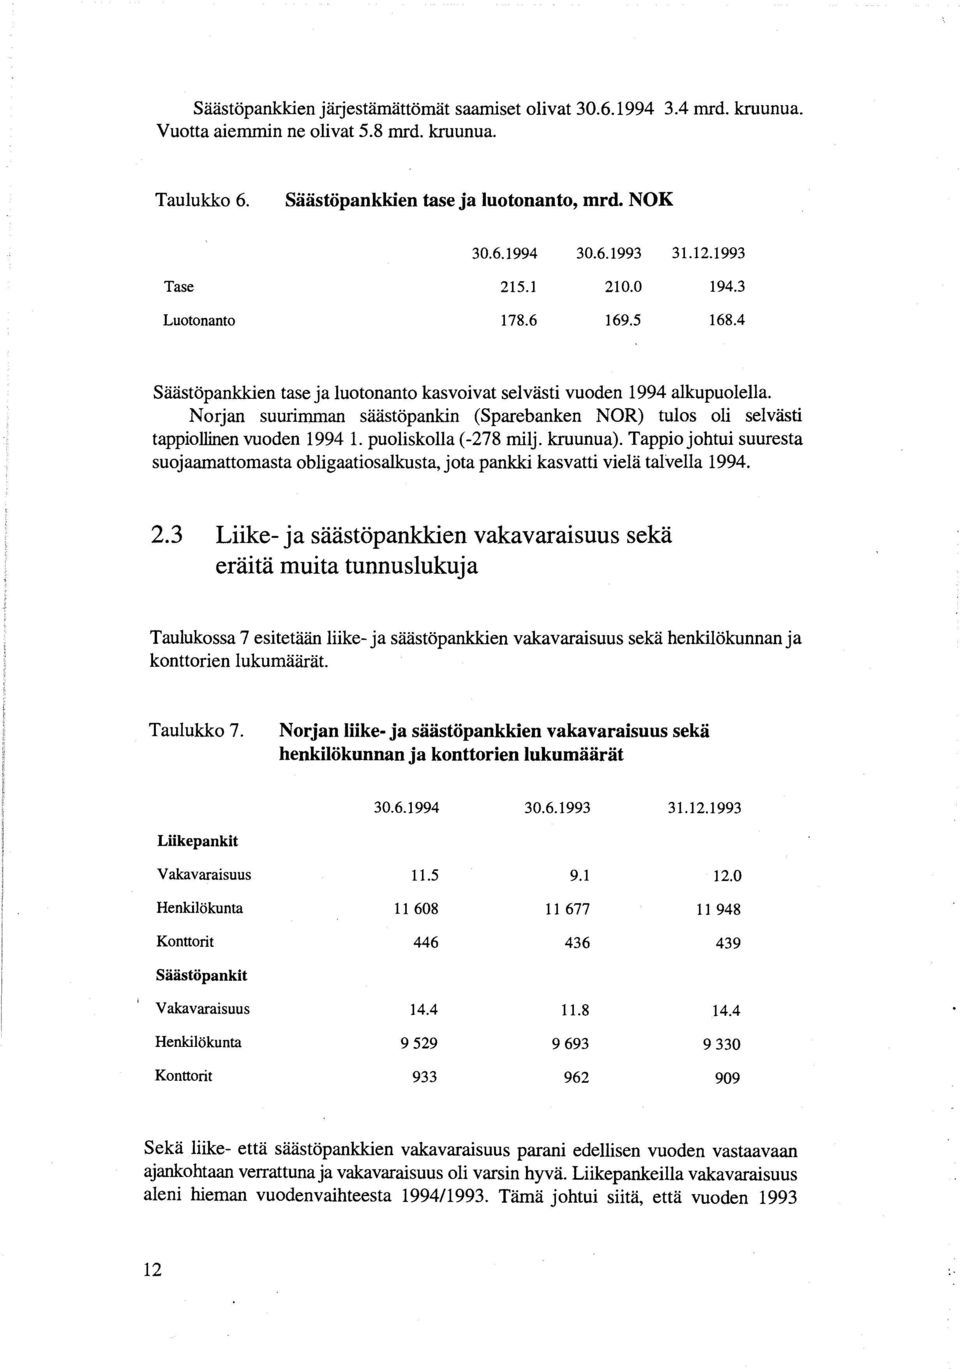 Norjan suurimman säästöpankin (Sparebanken NOR) tulos oli selvästi tappiollinen vuoden 1994 1. puoliskolla (-278 rnilj. kruunua).